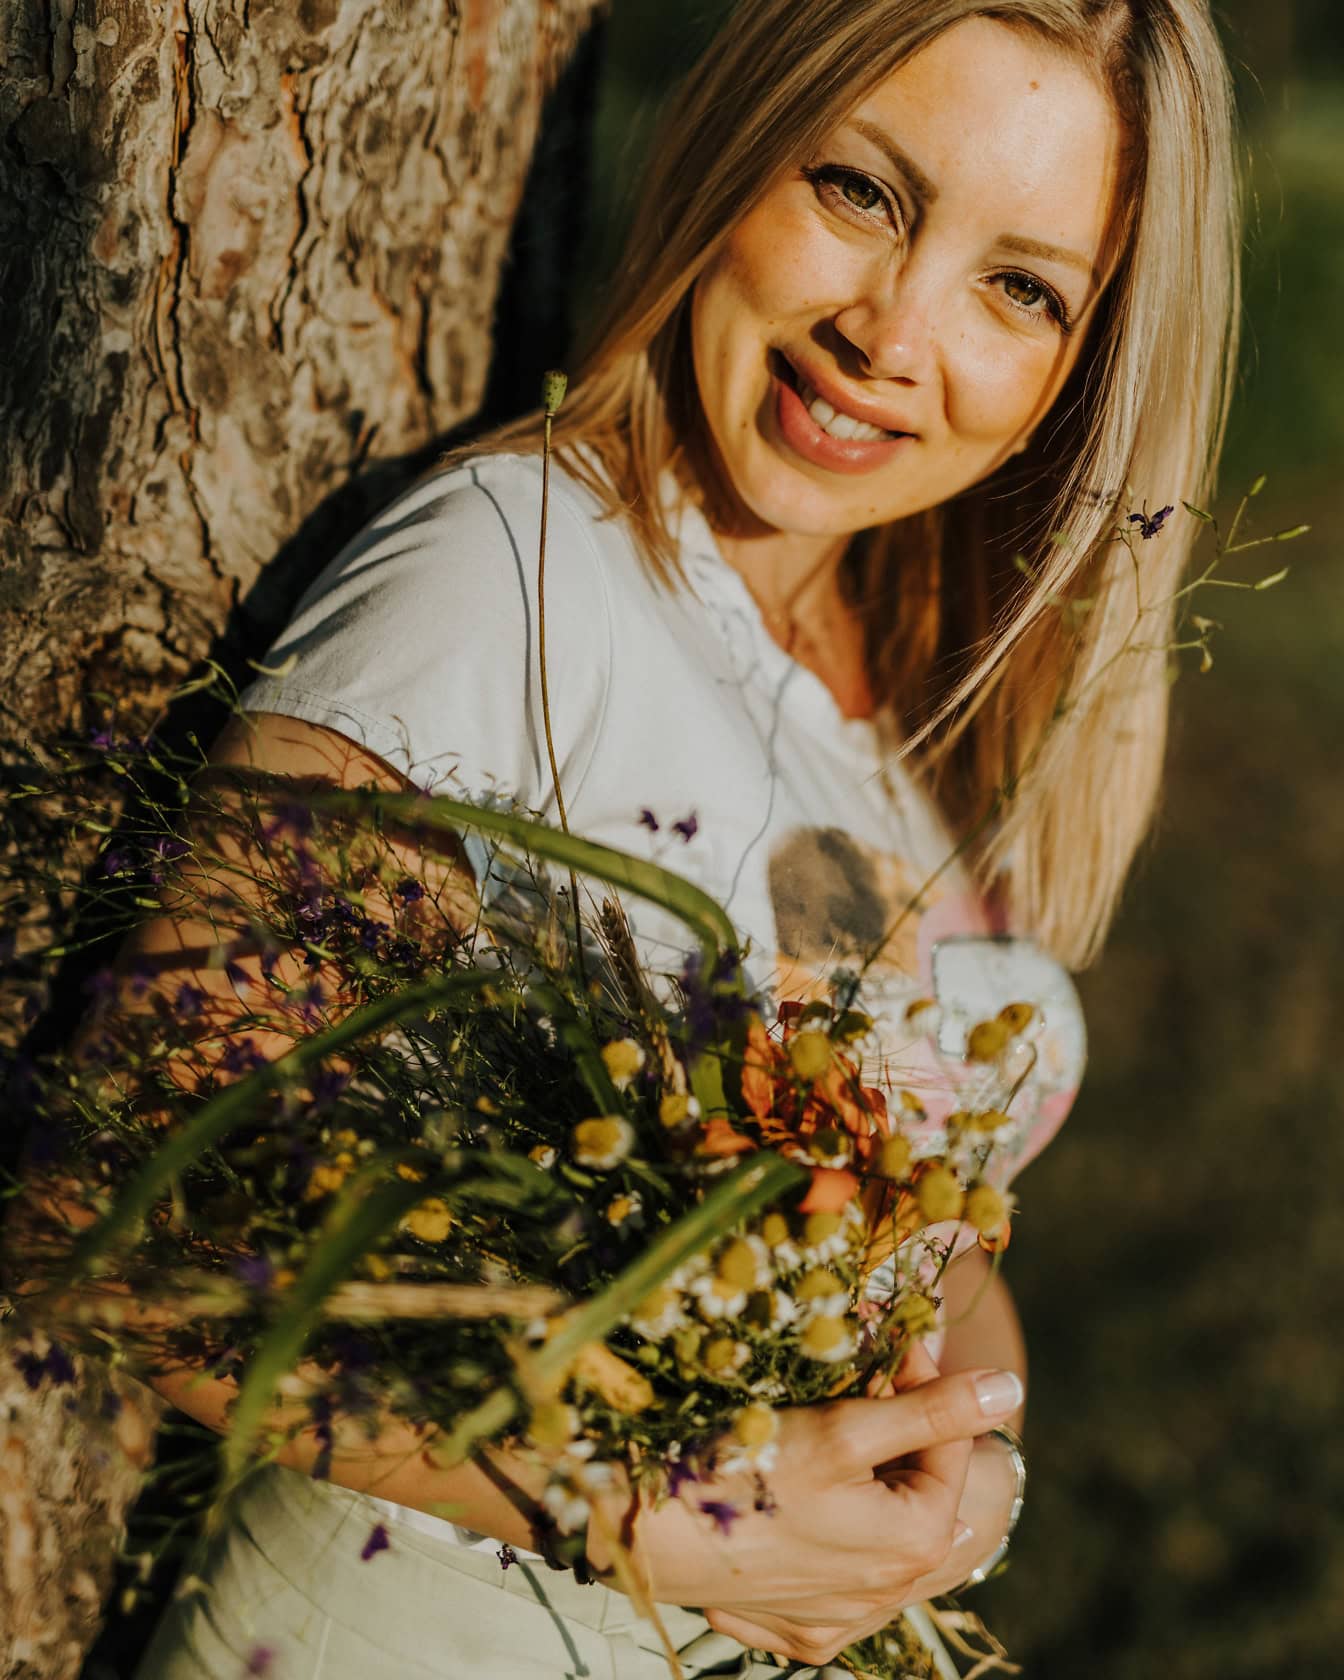 Portrét usmievavej blond ženy opierajúcej sa o strom a držiacej kyticu poľných kvetov